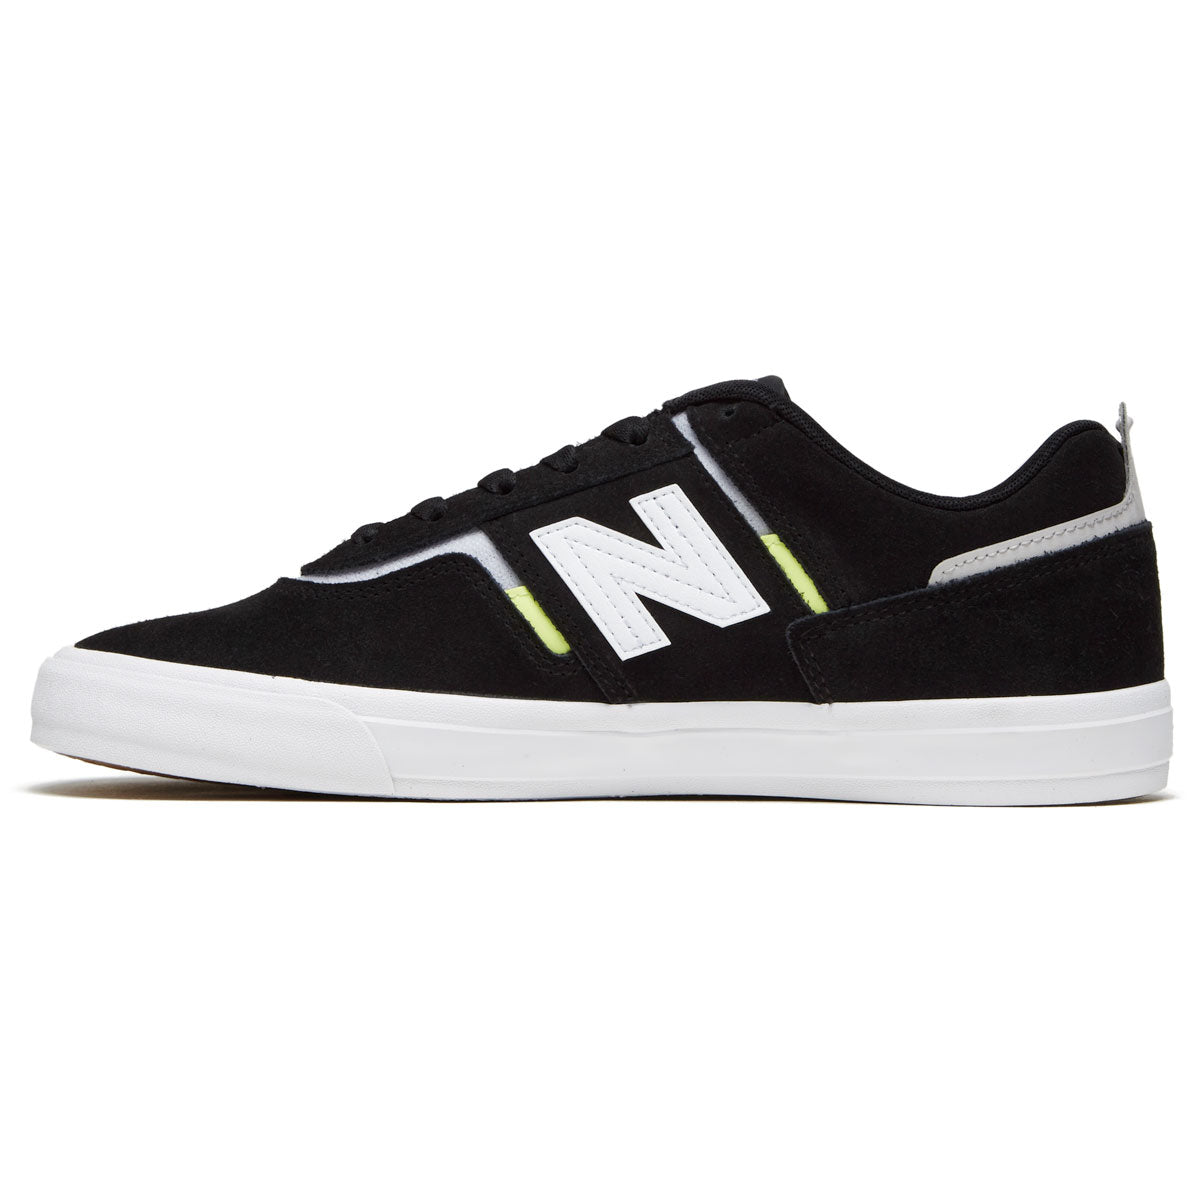 New Balance 306 Foy Shoes - Black/White image 2